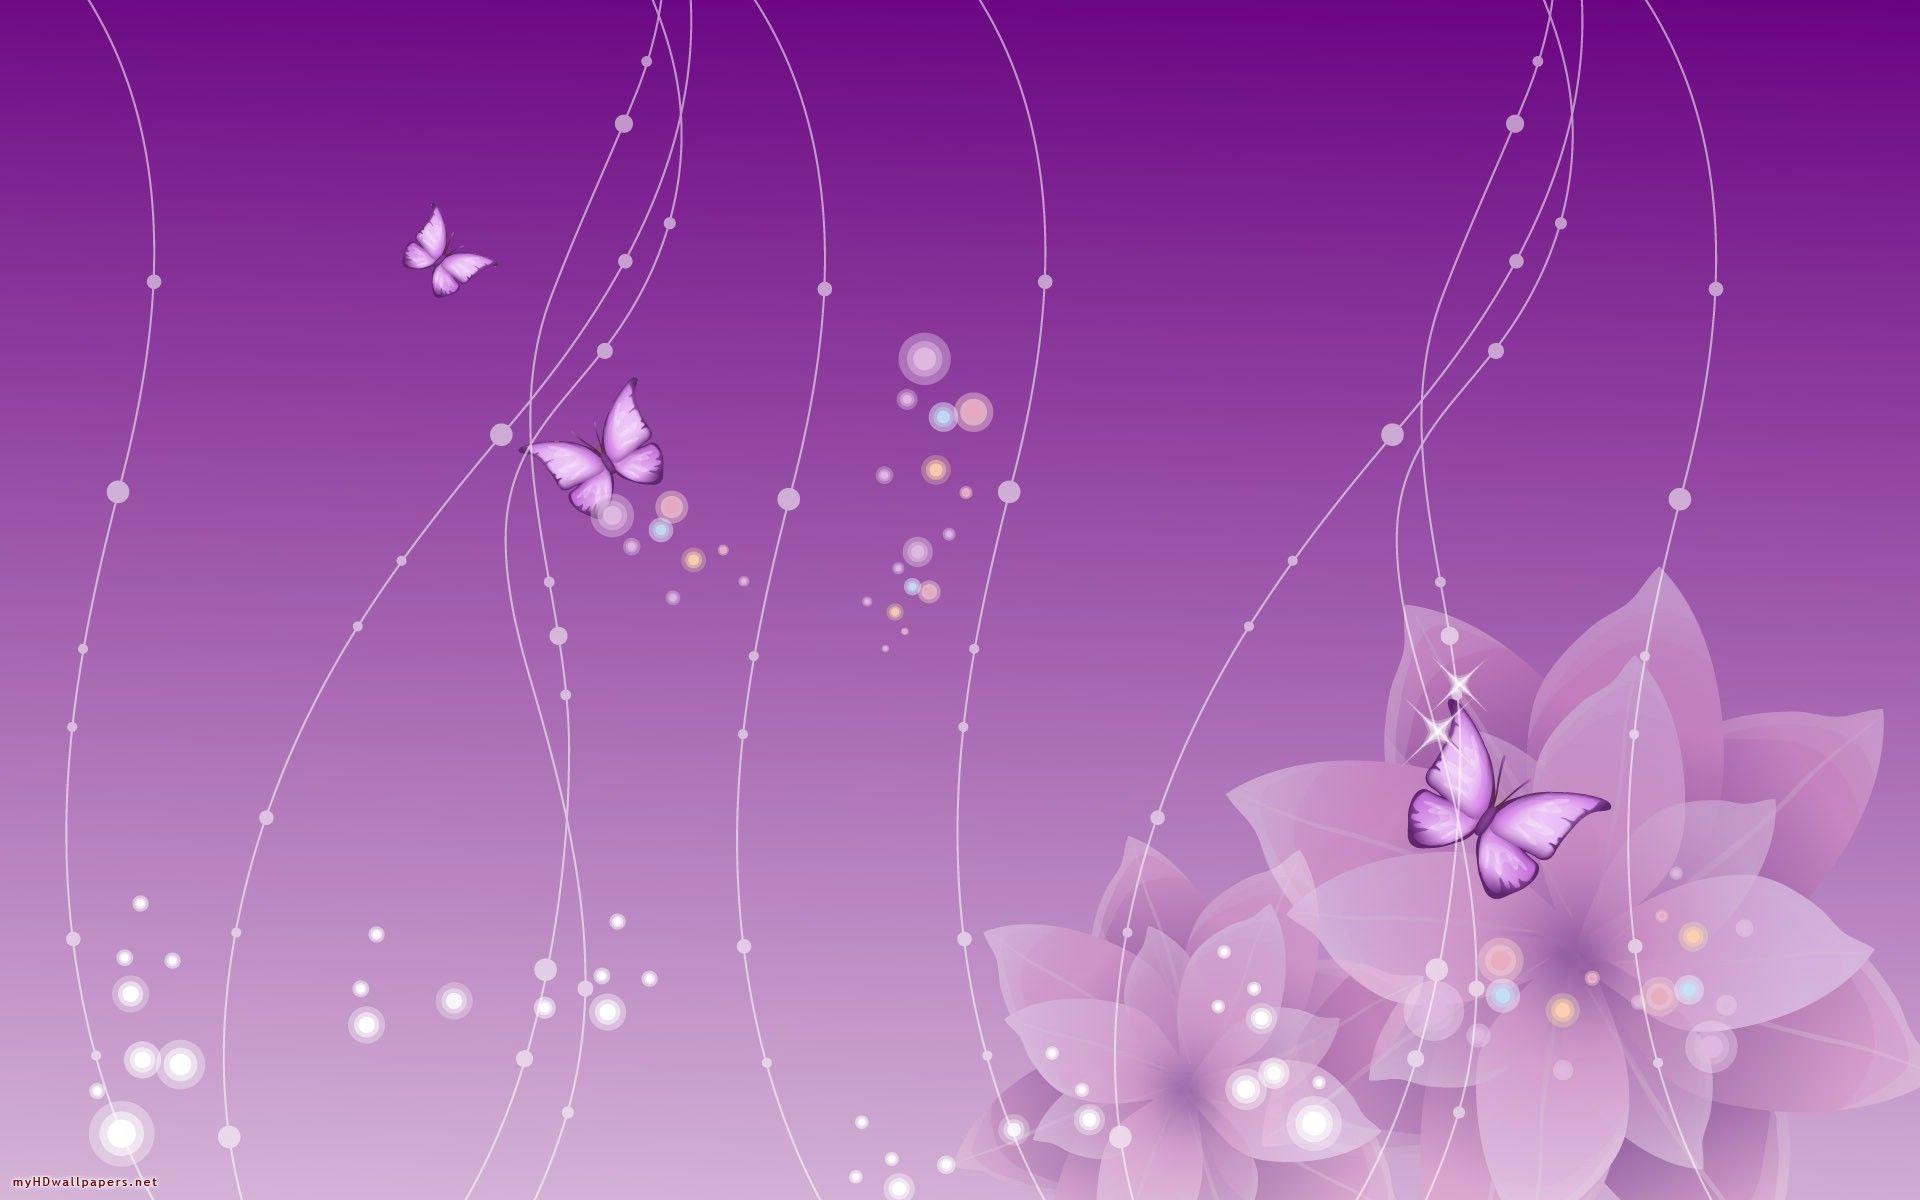 Wallpaper For > Beautiful Purple Butterfly Wallpaper